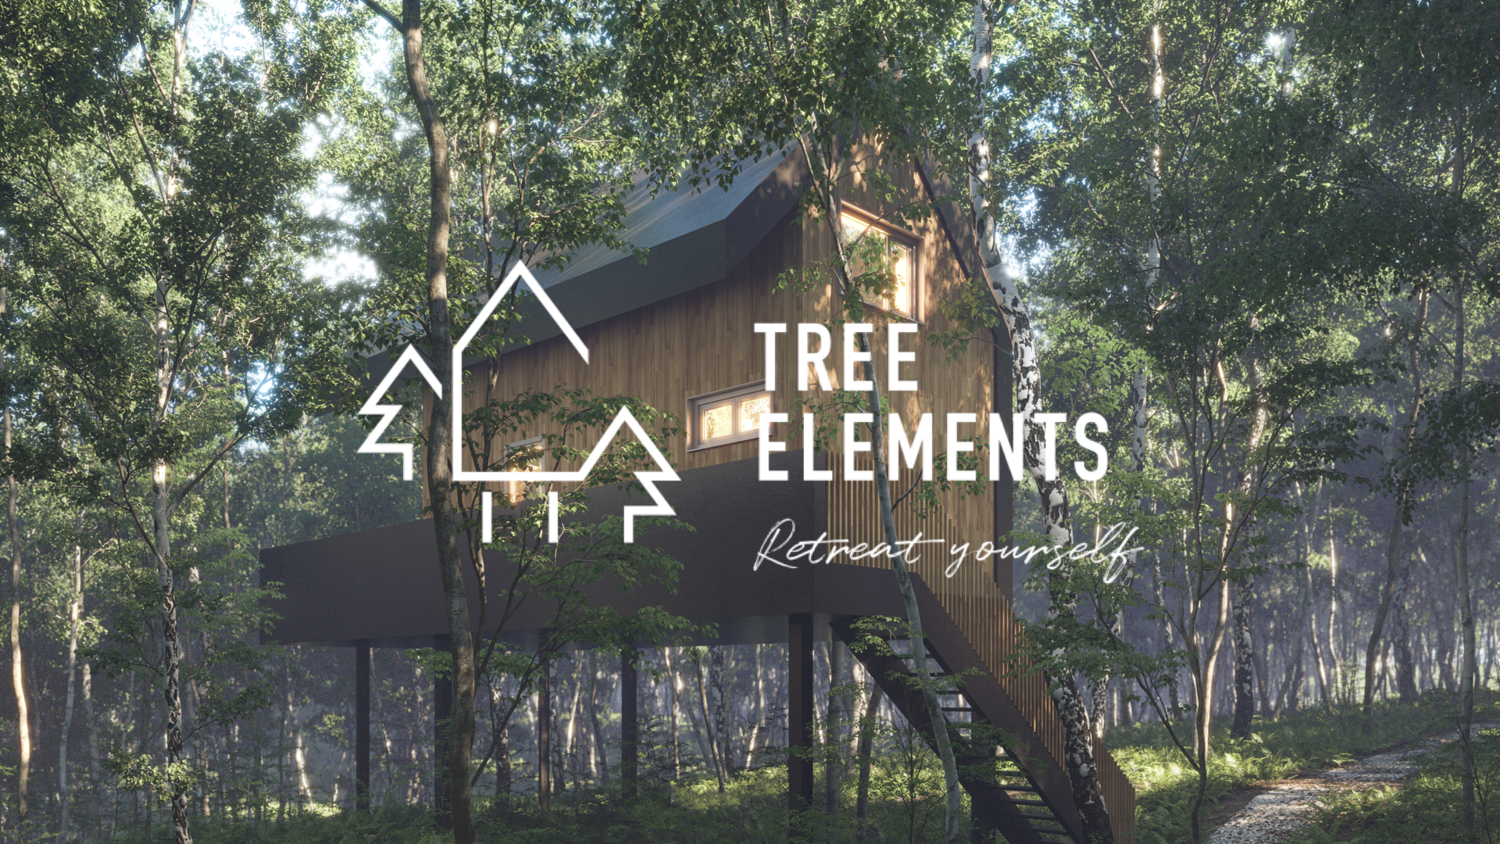 www.tree-elements.co